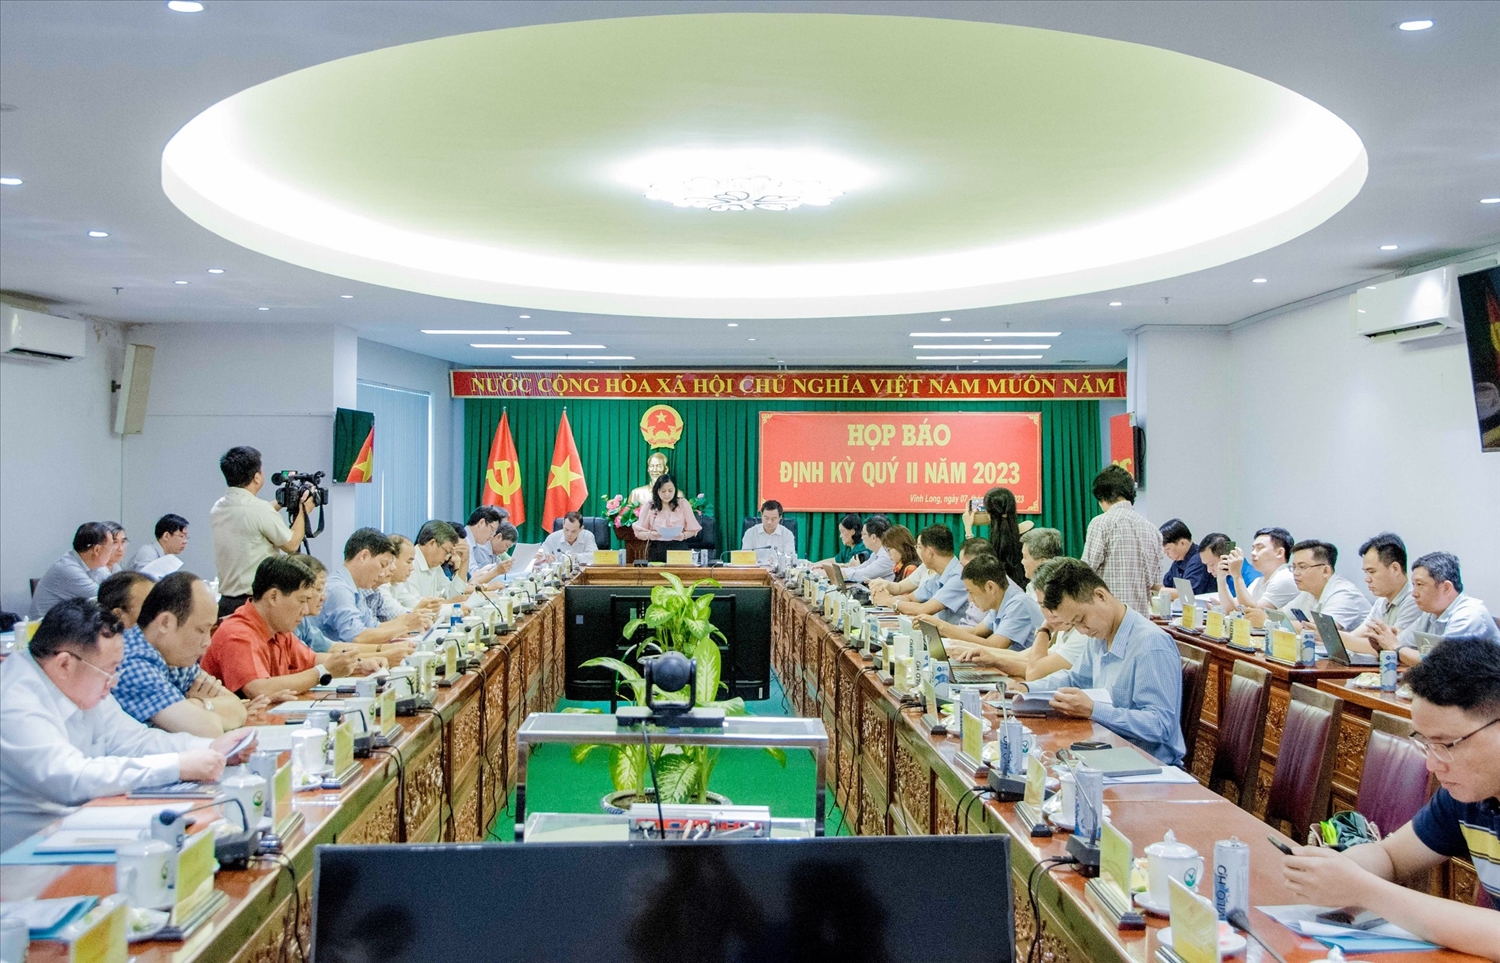 Quang cảnh buổi họp báo định kỳ quý II năm 2023 tỉnh Vĩnh Long